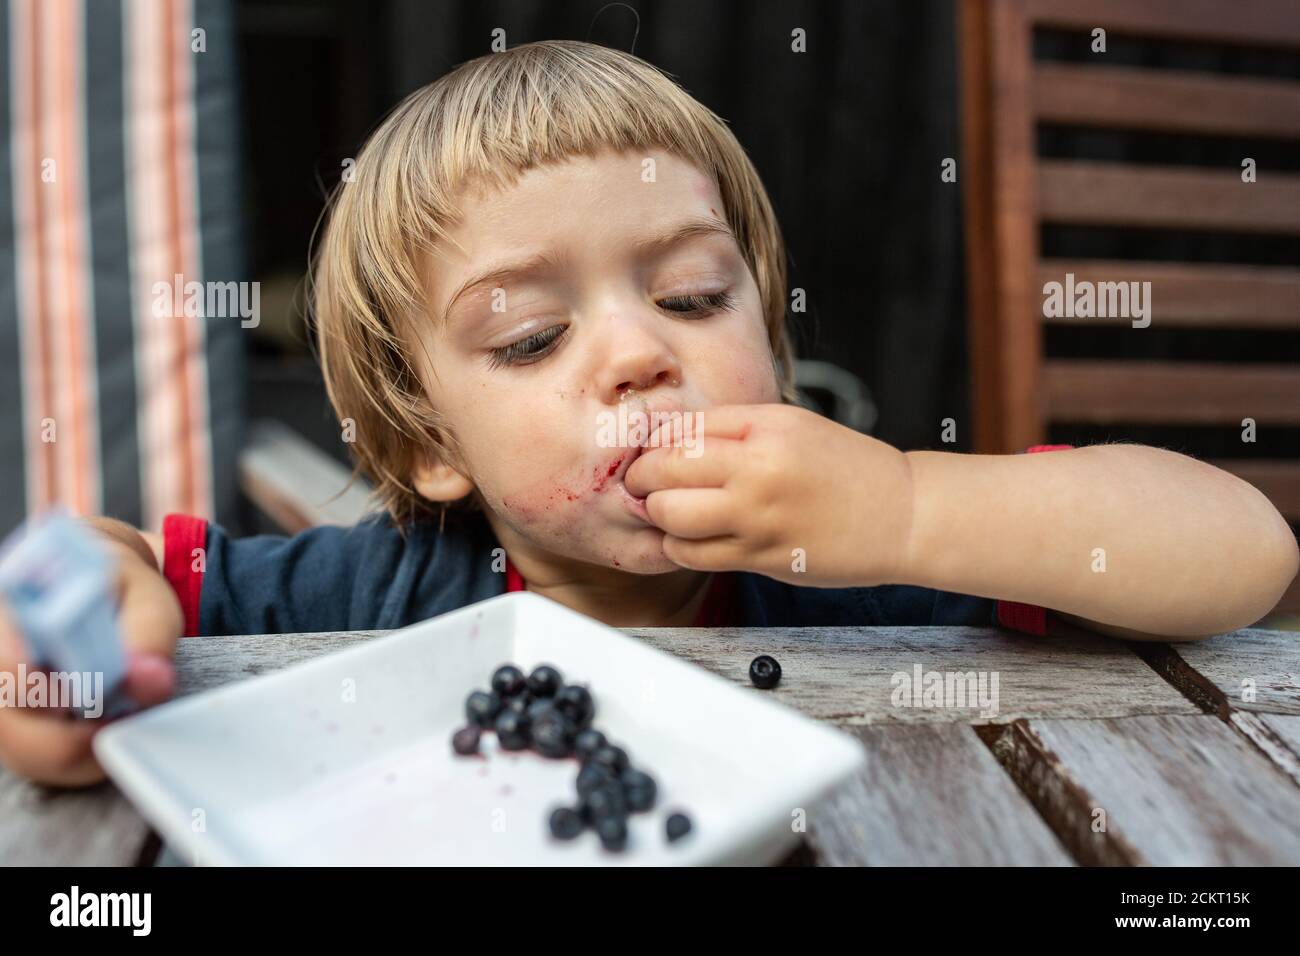 Jeune garçon mangeant des bleuets Banque D'Images